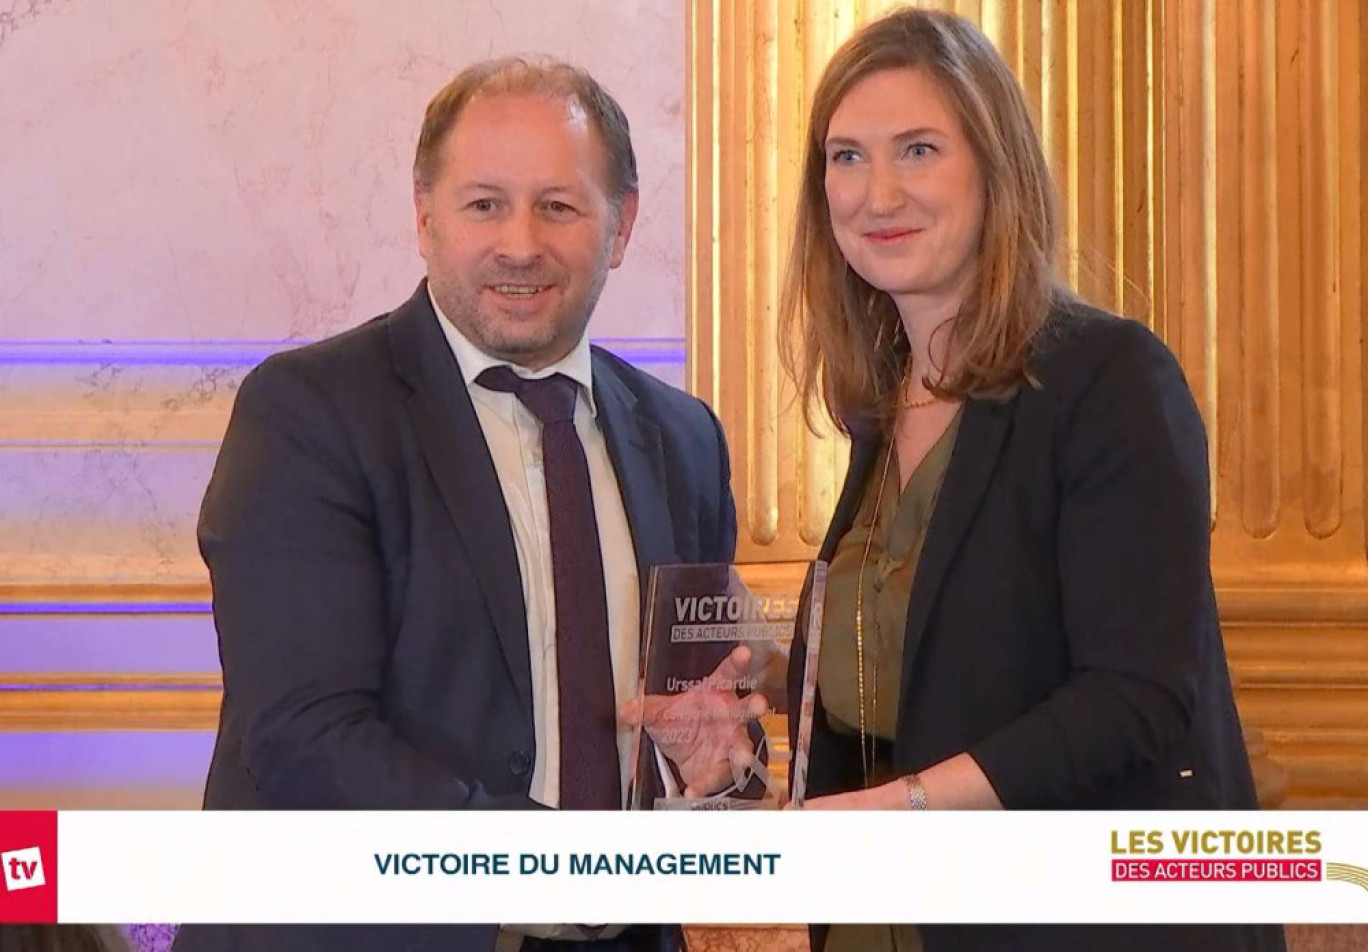 L'Urssaf Picardie lauréate des Victoires des acteurs 2023 dans la catégorie "Management"